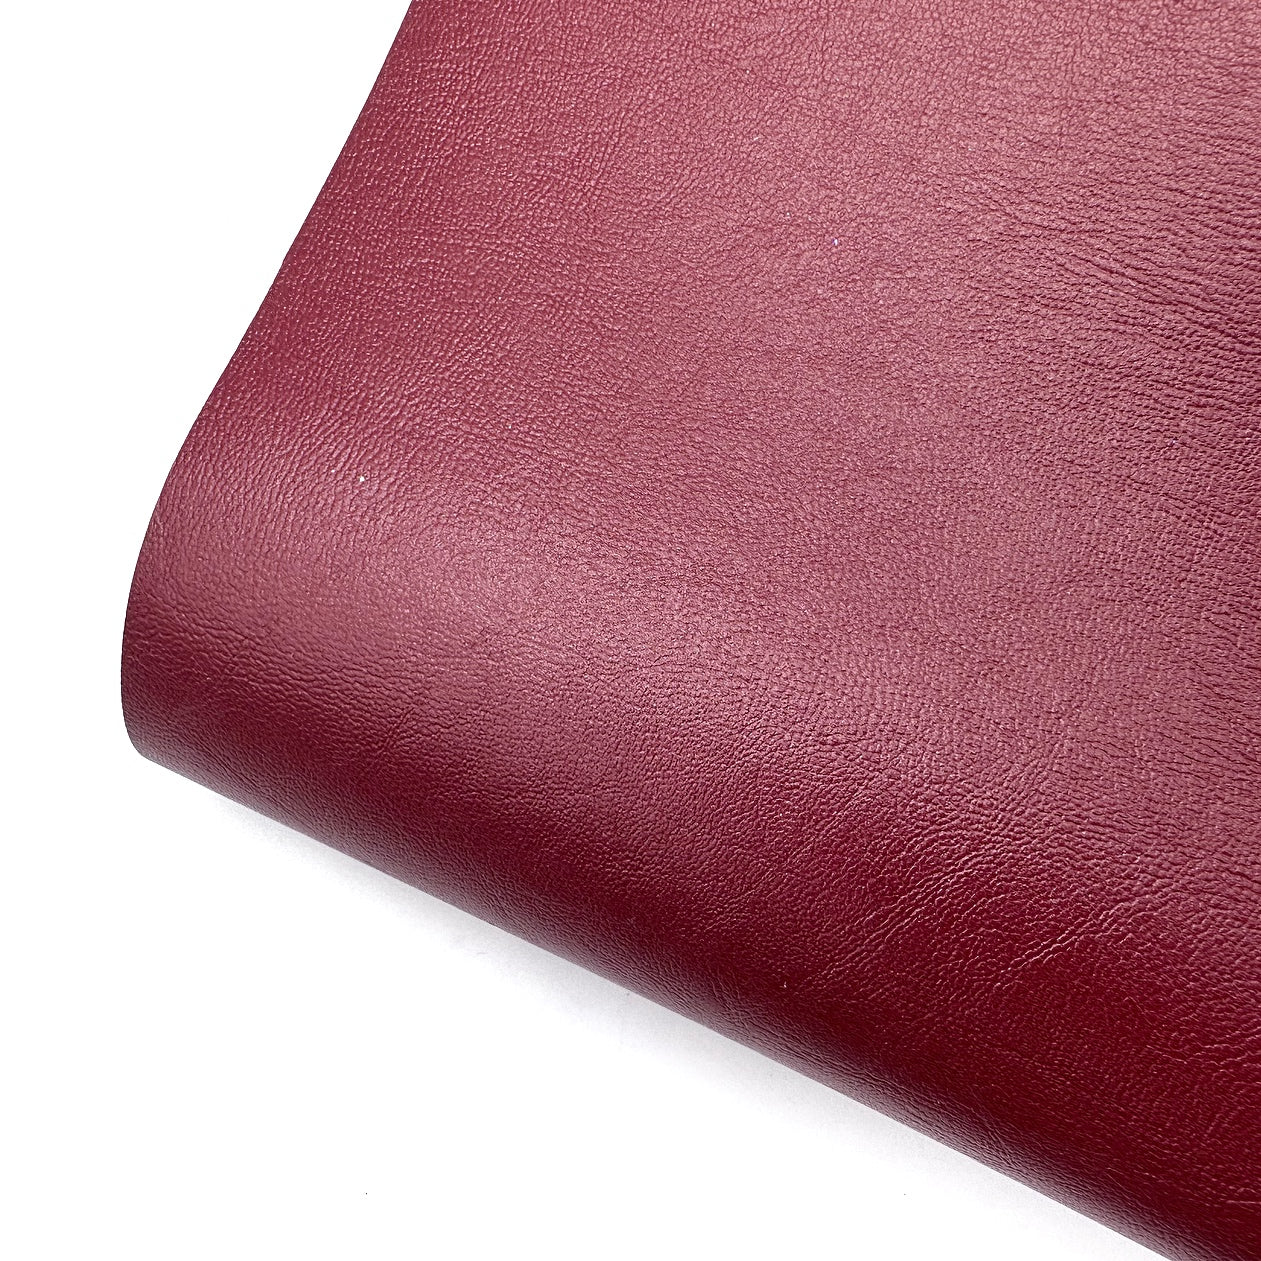 Soft Burgundy Core Colour Premium Faux Leather Fabric Sheets